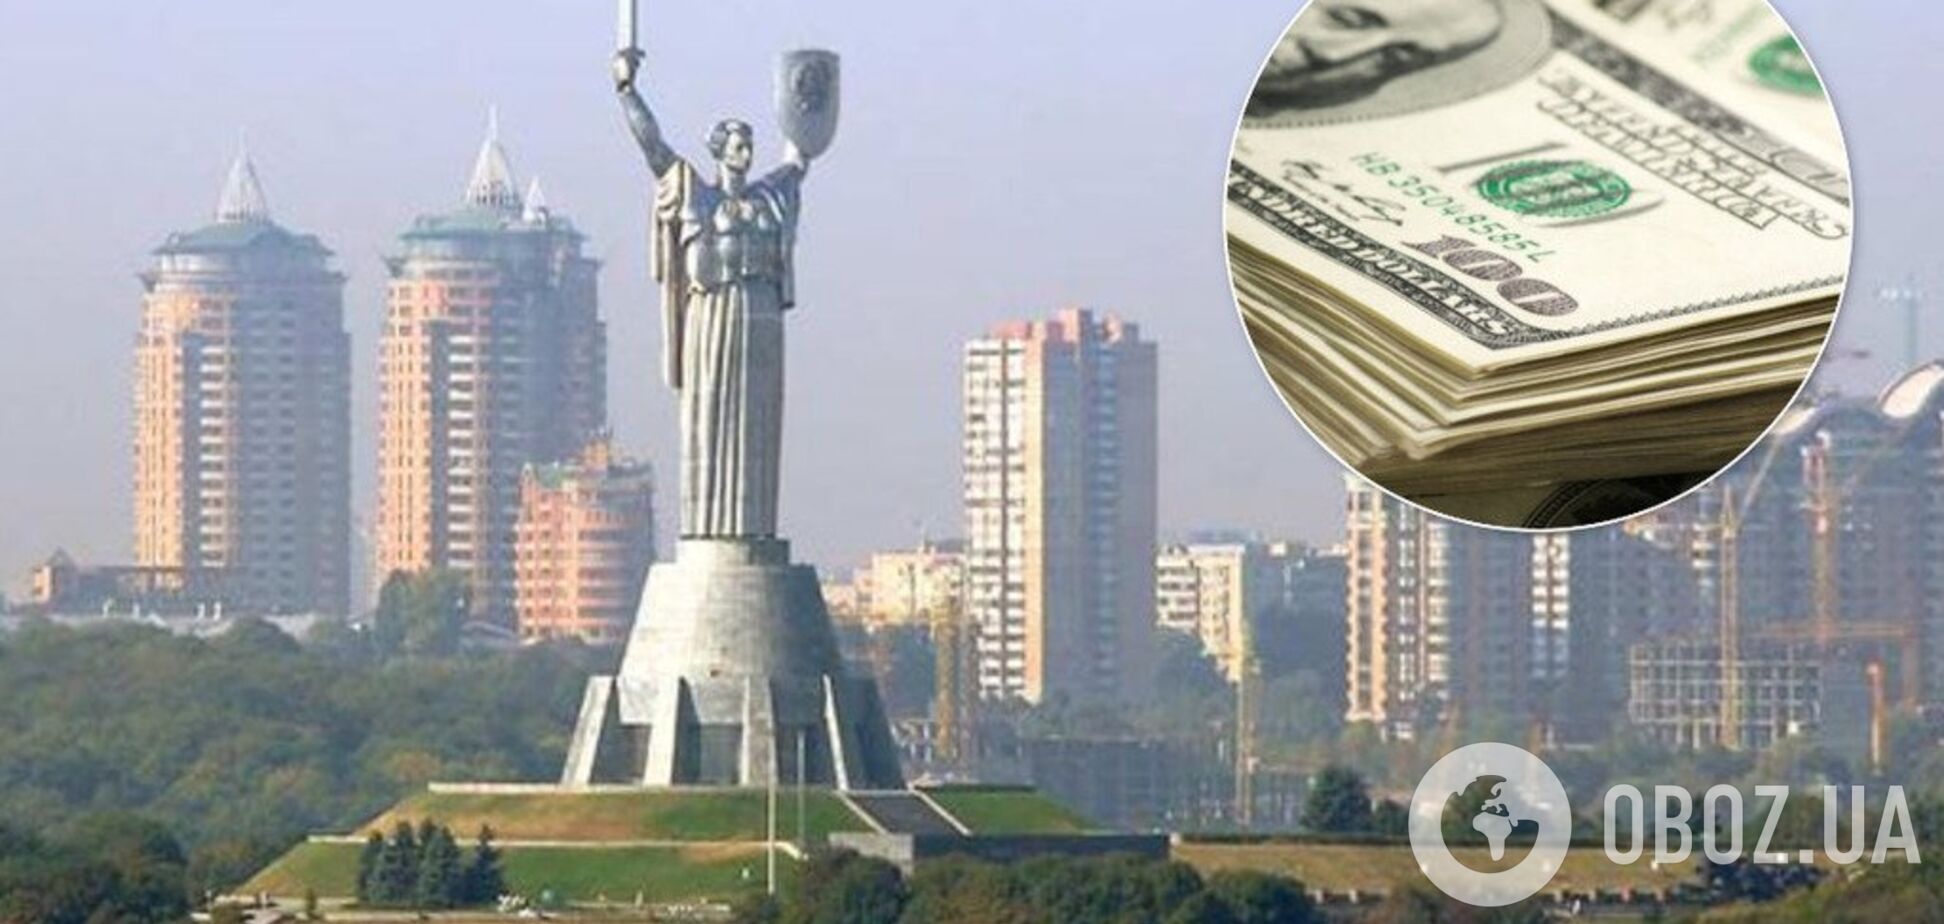 'Жилье для миллионеров': сколько стоят квартиры в небоскребах Киева